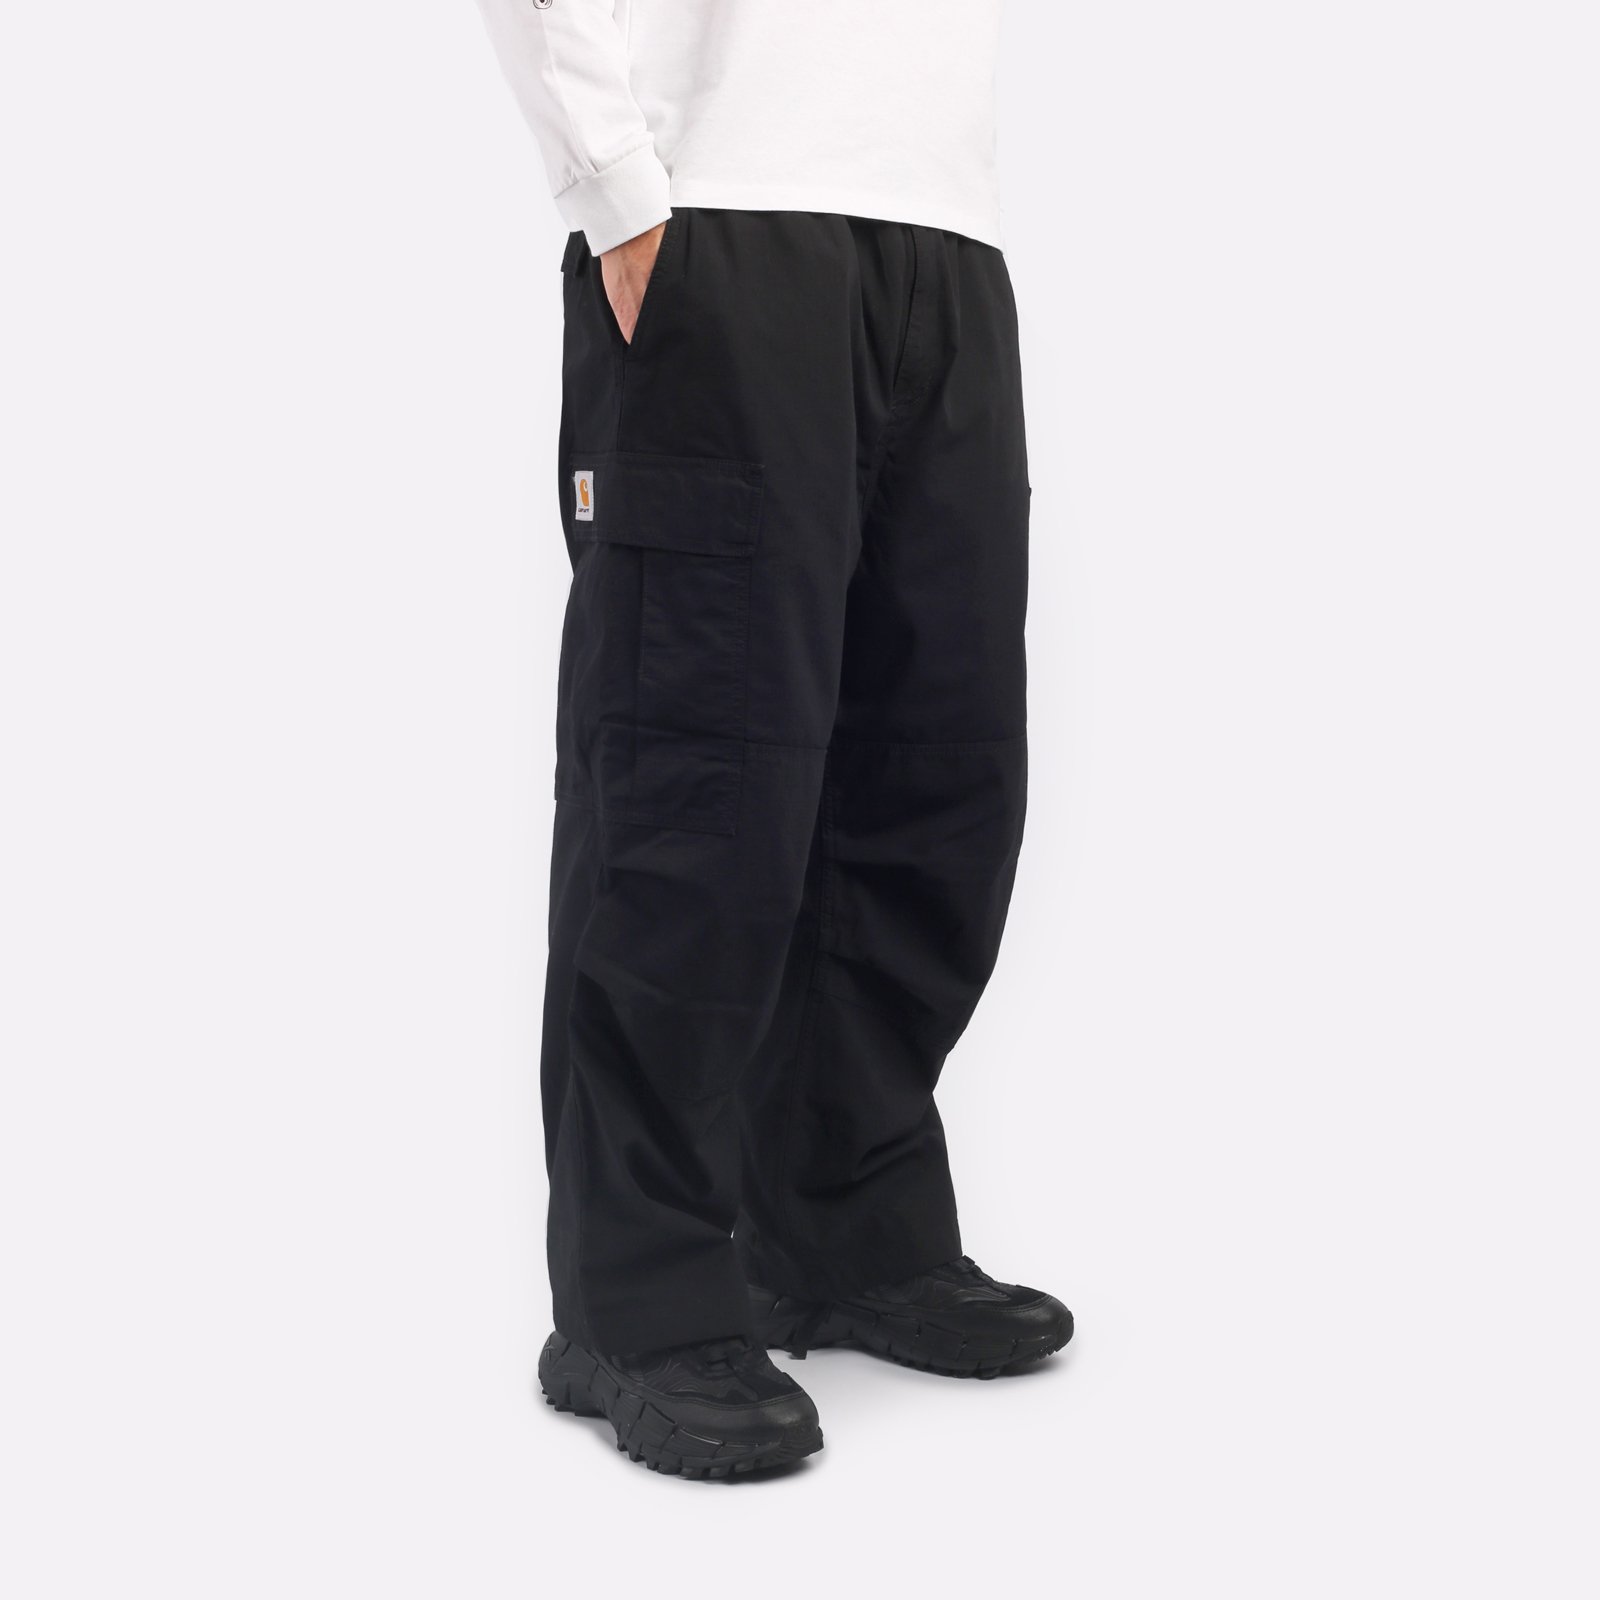 мужские черные брюки Carhartt WIP Jet Cargo Pant I032967-black - цена, описание, фото 3